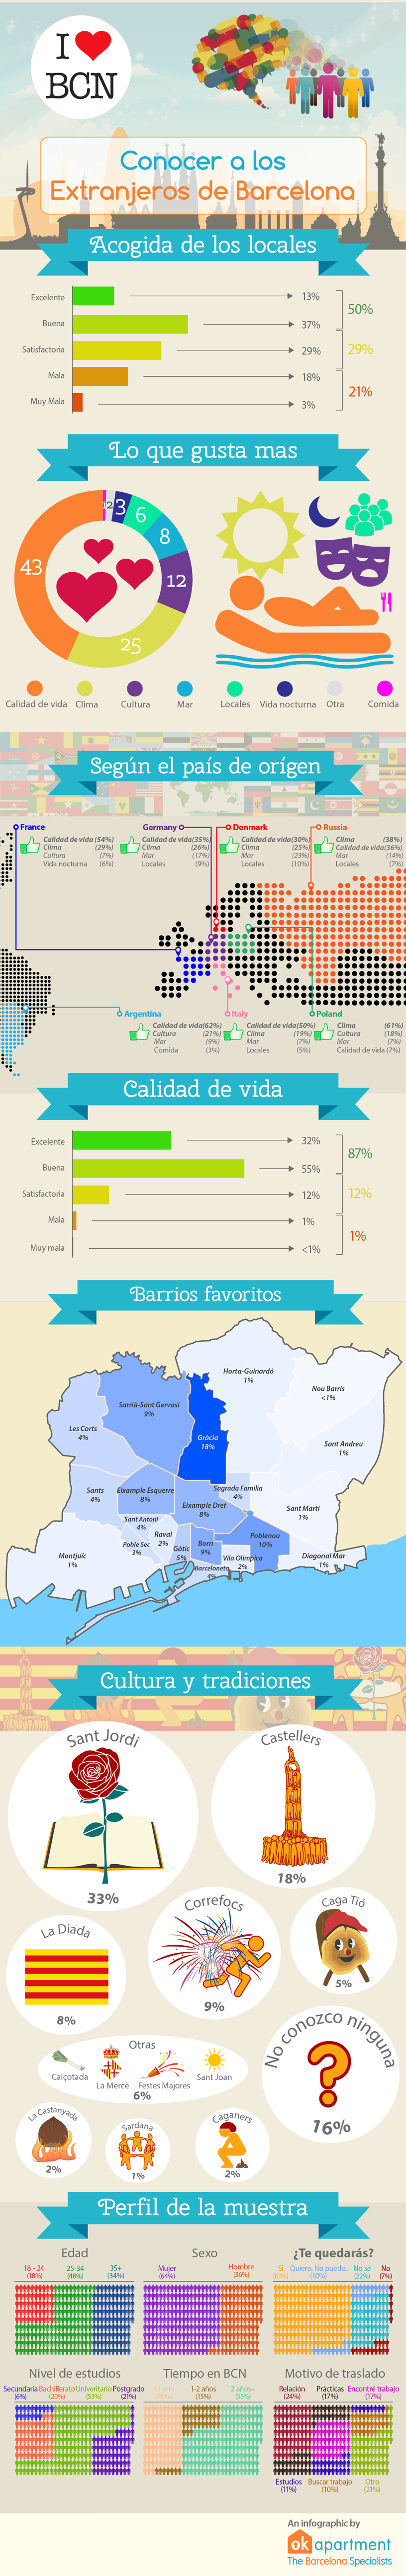 Infografia - Lo que gustan más de Barcelona a los extranjeros